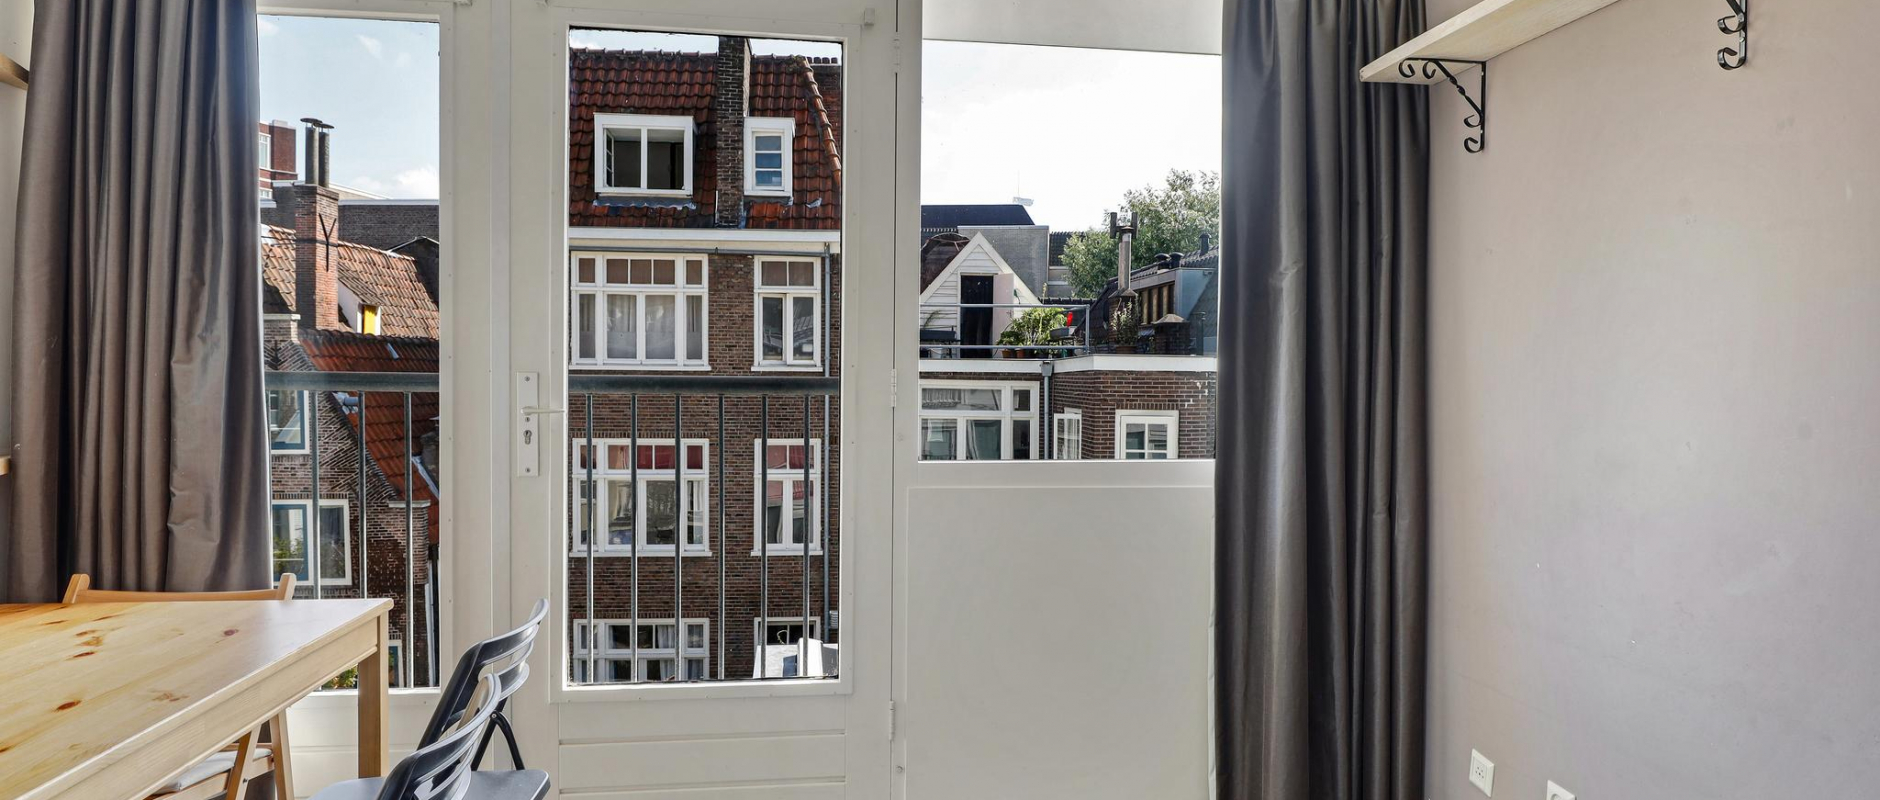 Woning te koop aan de Nieuwe Nieuwstraat 39 te Amsterdam